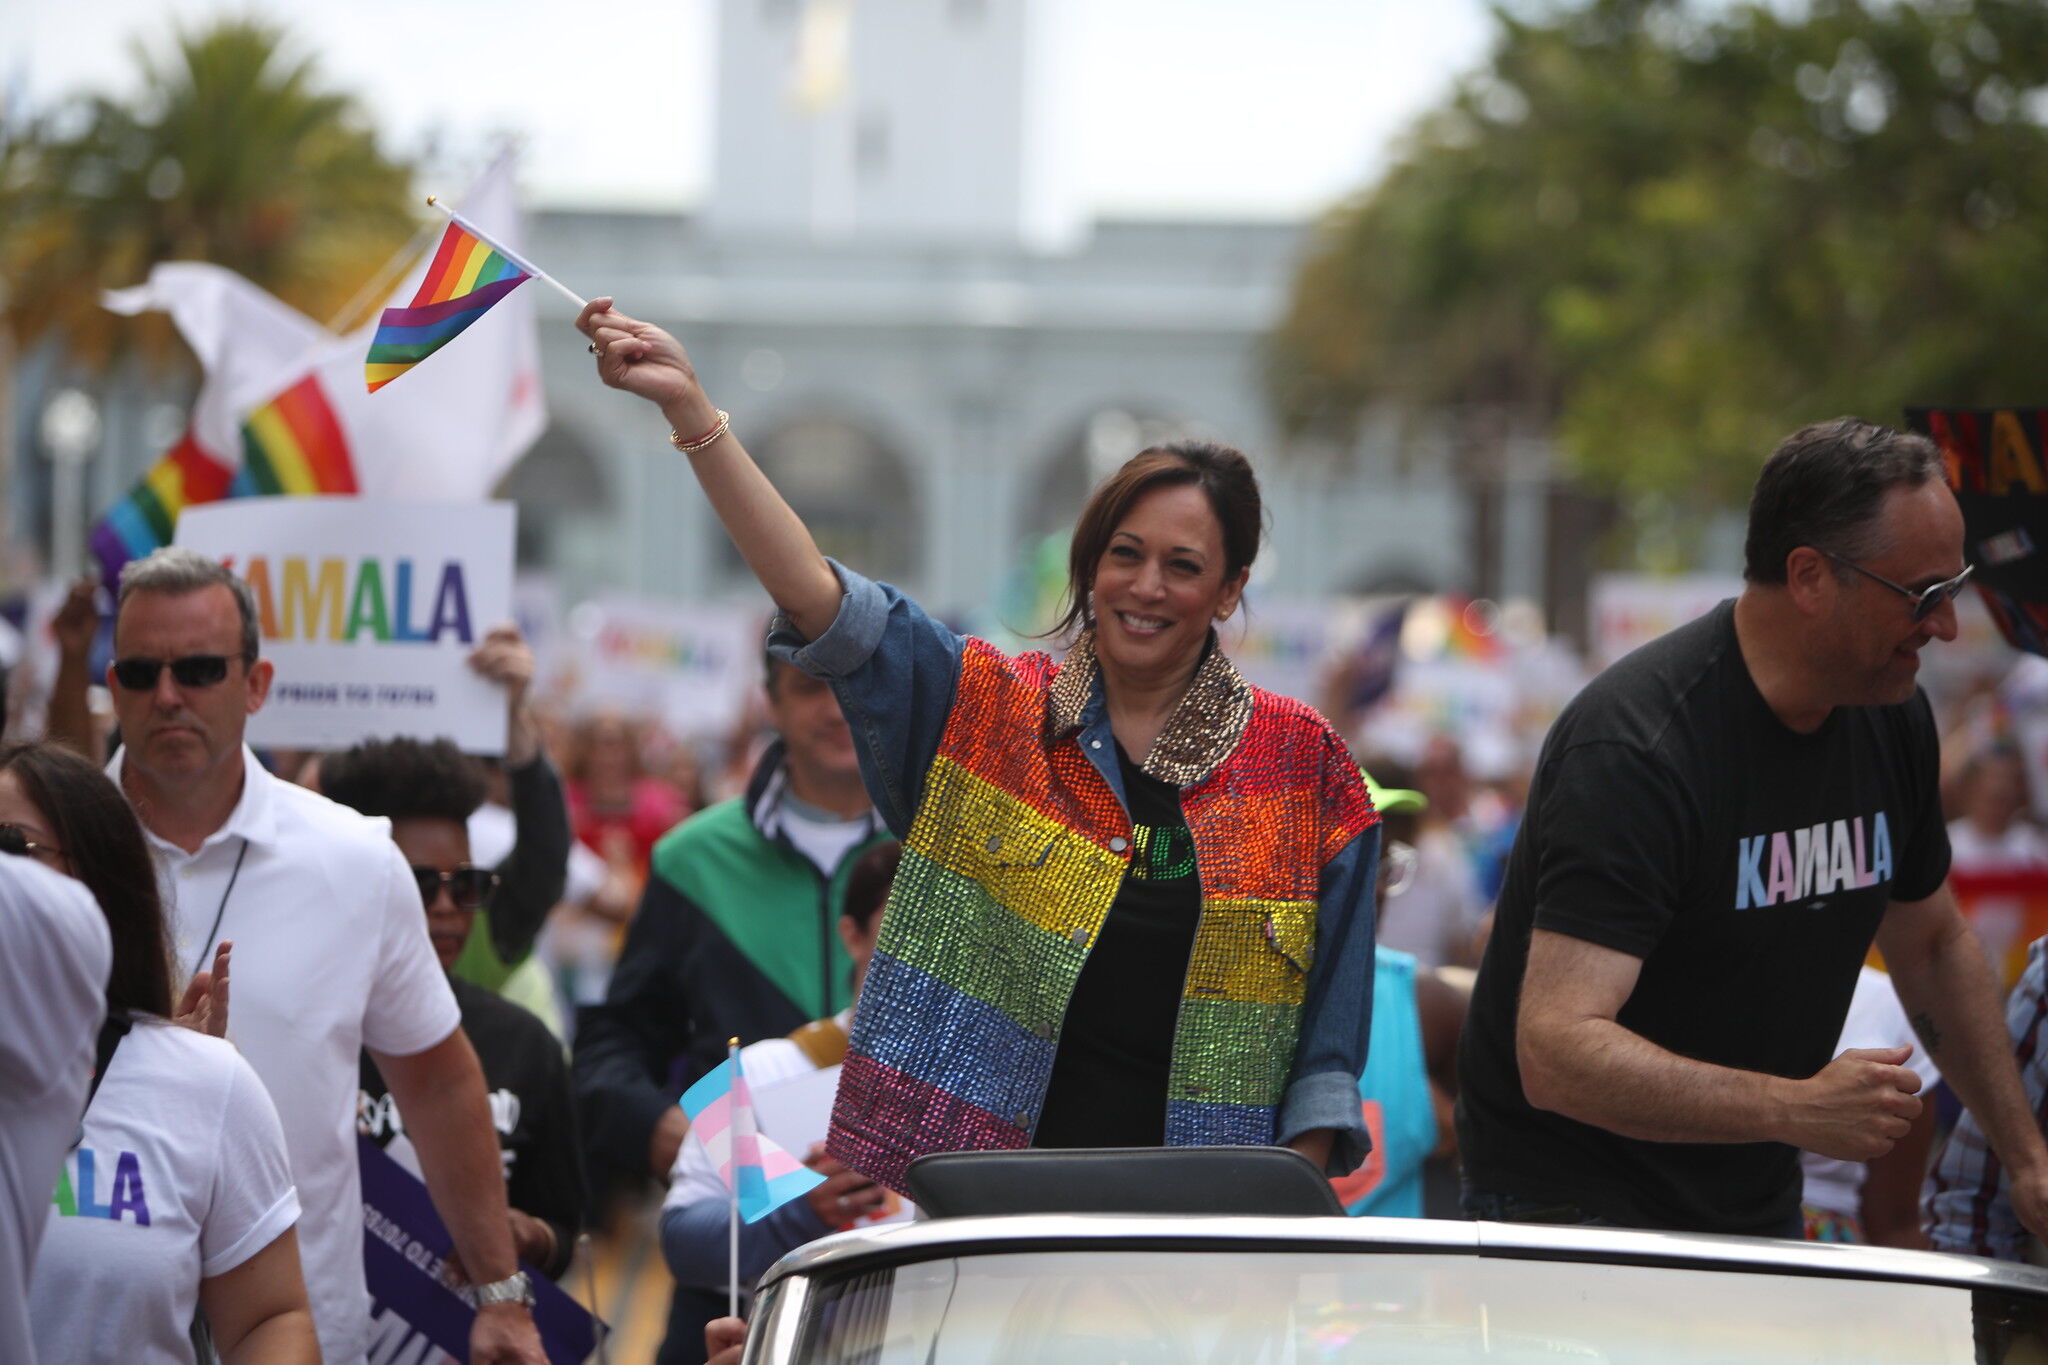 Senator Kamala Harris at the 2019 San Francisco Pride Parade